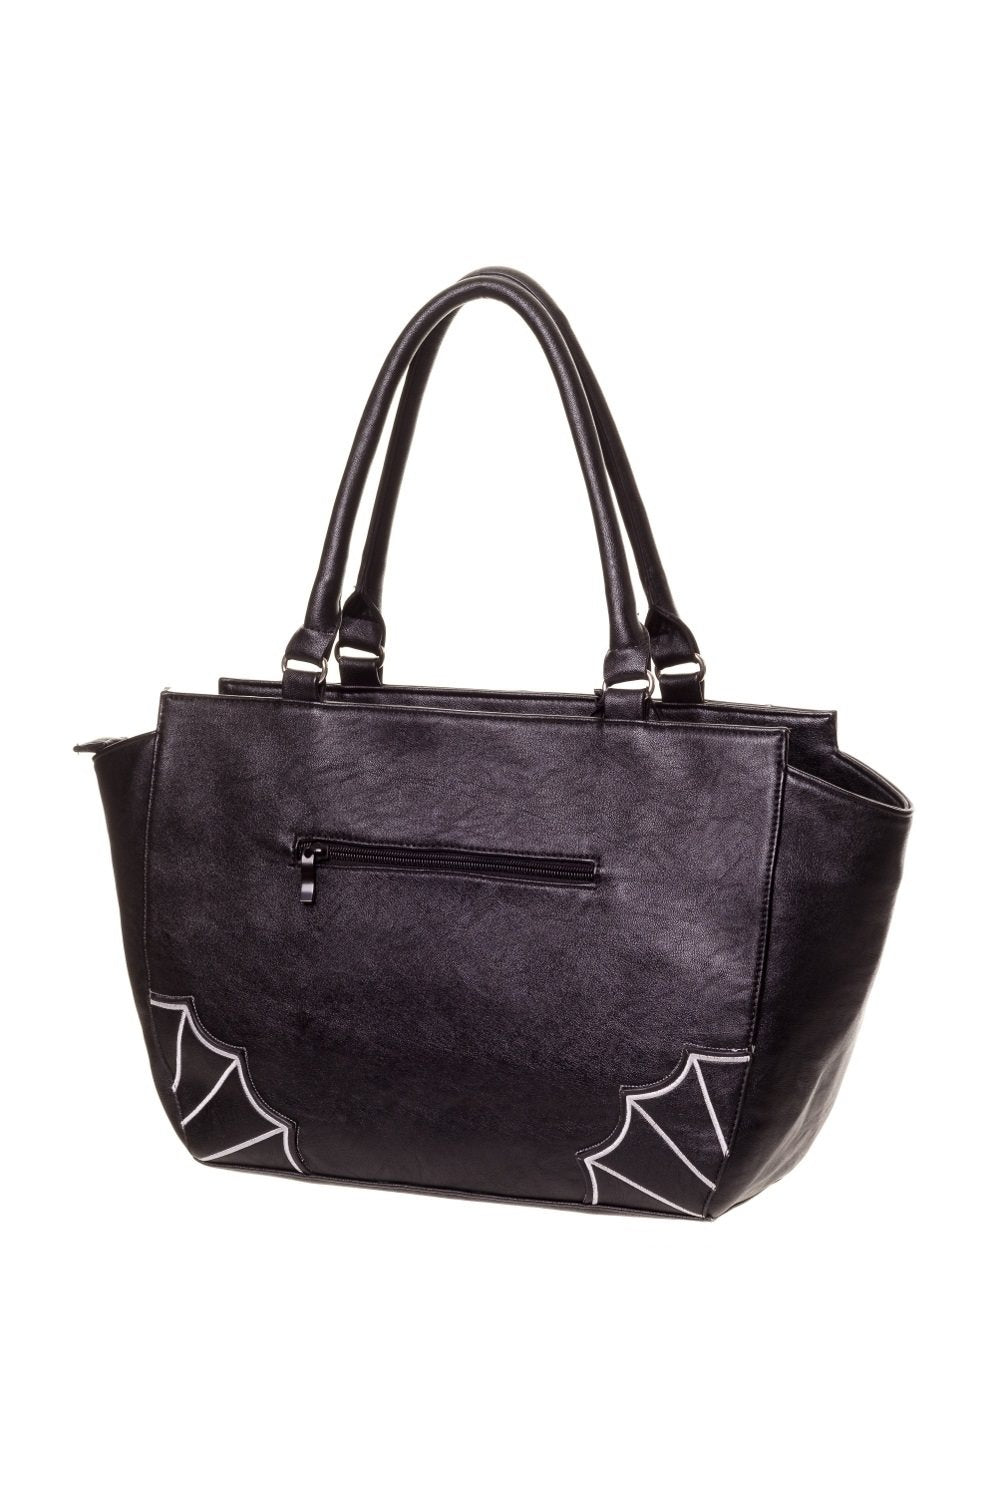 Gothic Bats Shoulder Bag Purse – Bags By April